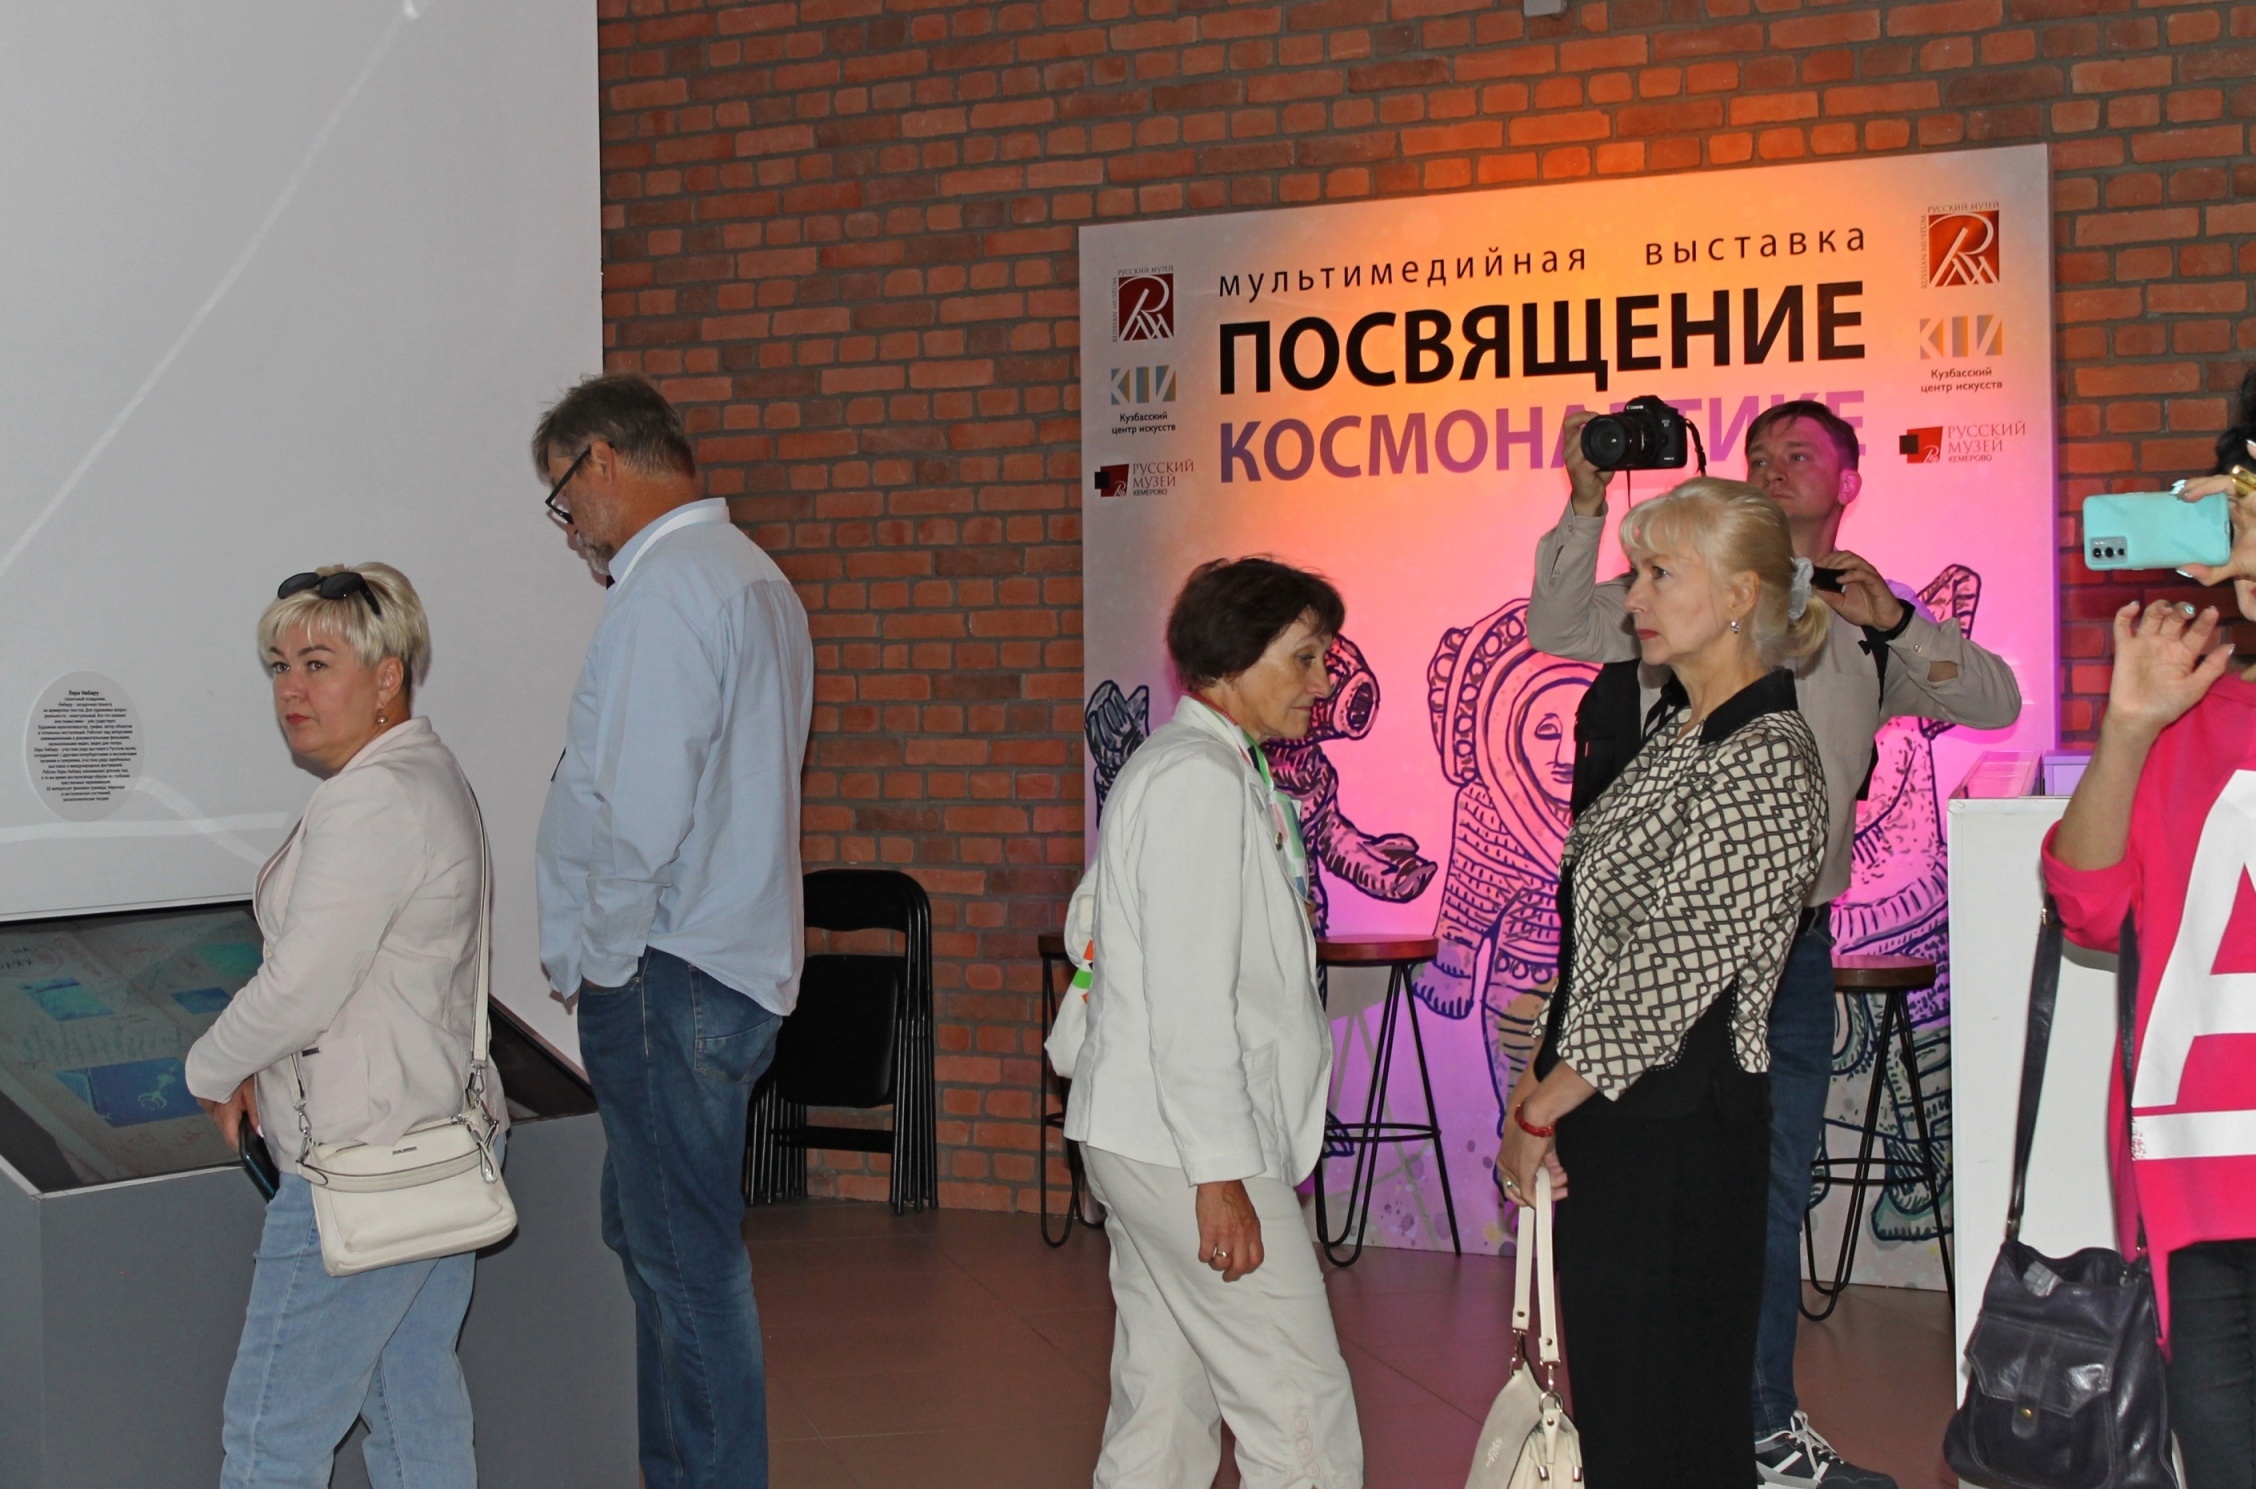 Начальник службы «Виртуальный Русский музей» Мария Гладких провела экскурсию по выставке «Посвящение космонавтике» для участников проекта «Музейные маршруты России»